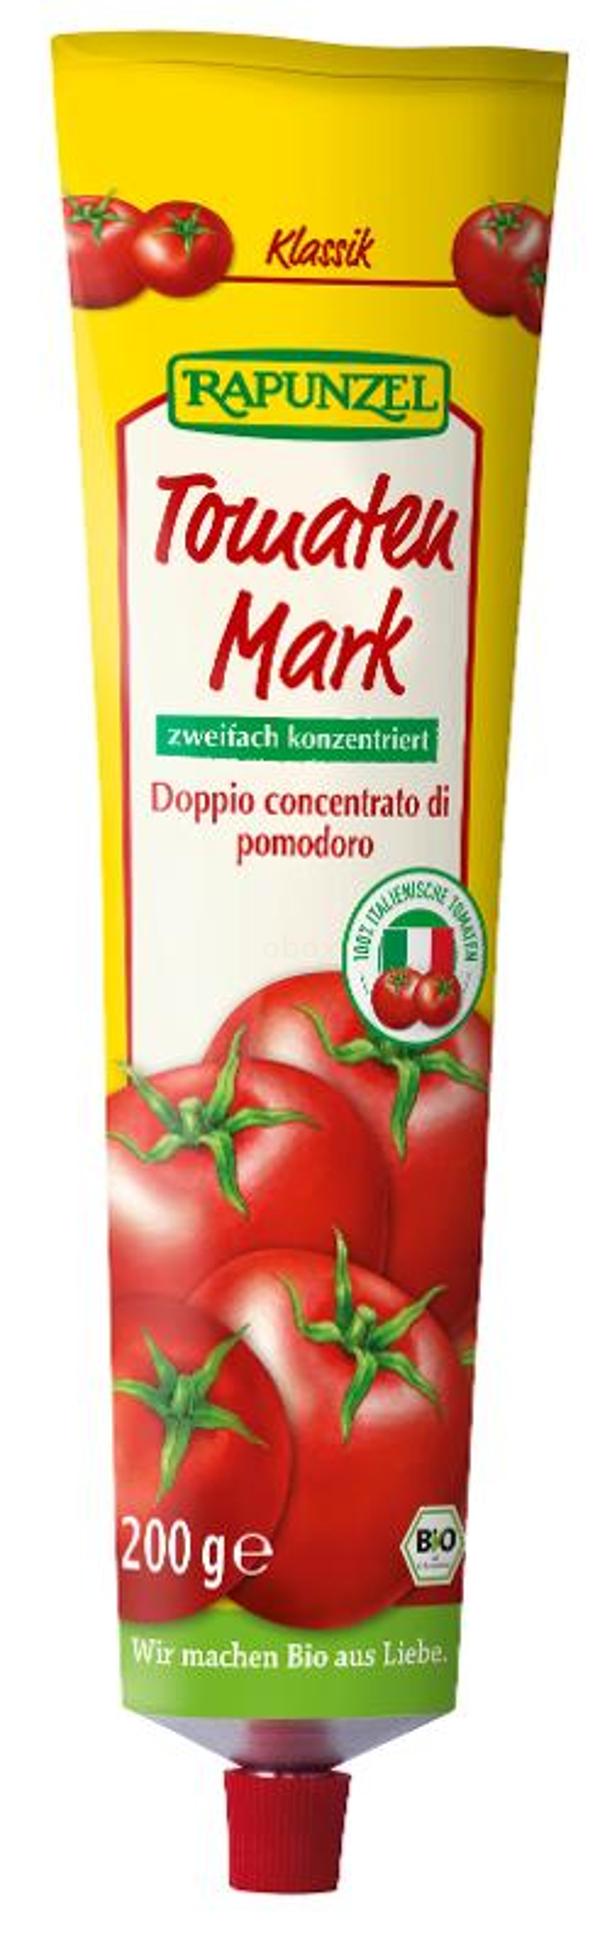 Produktfoto zu Tomatenmark